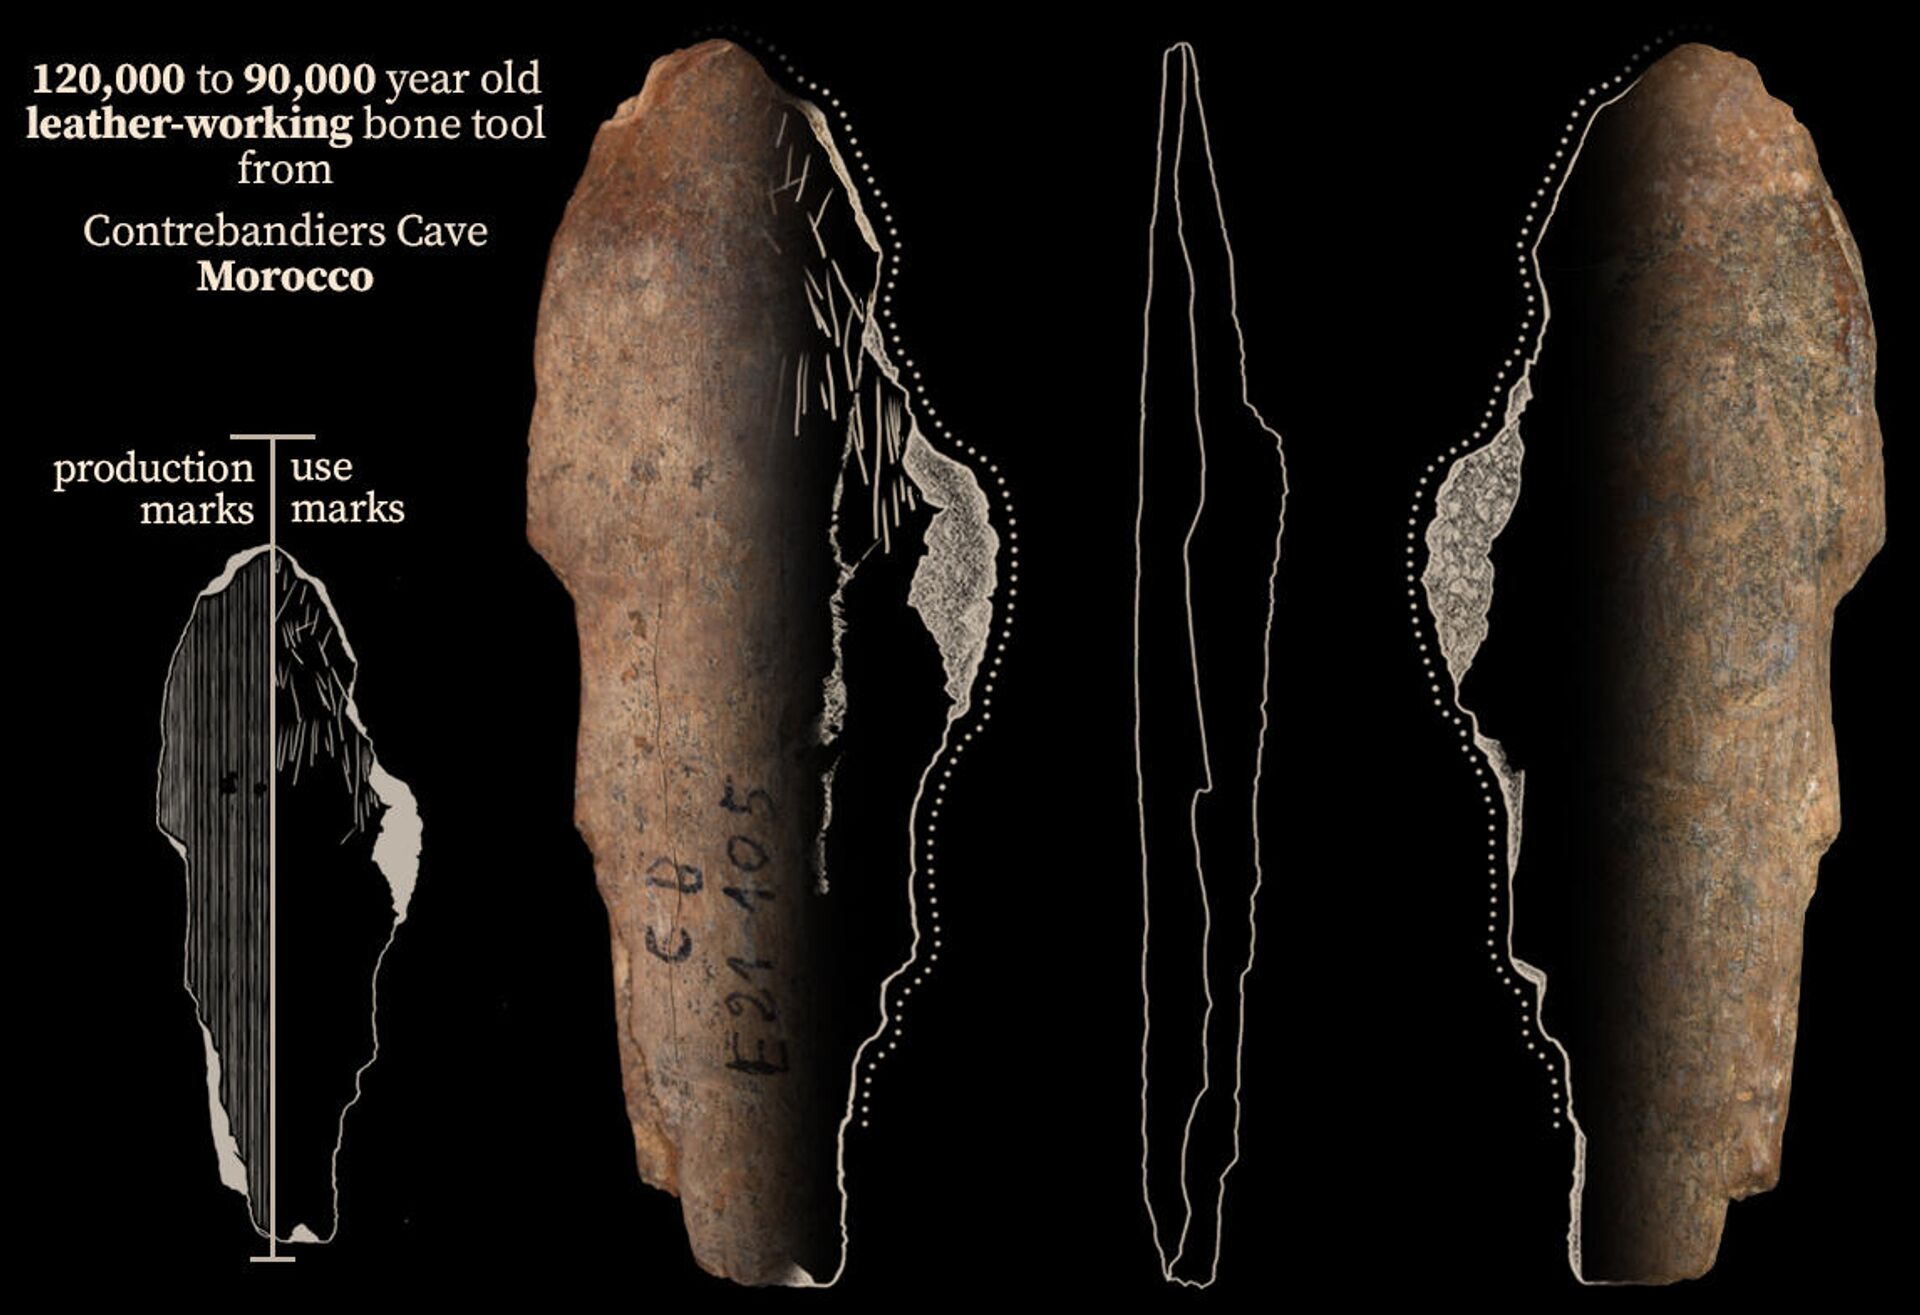  Костяной инструмент возрастом 120-90 тысяч лет из пещеры Контребандье в Марокко - РИА Новости, 1920, 16.09.2021